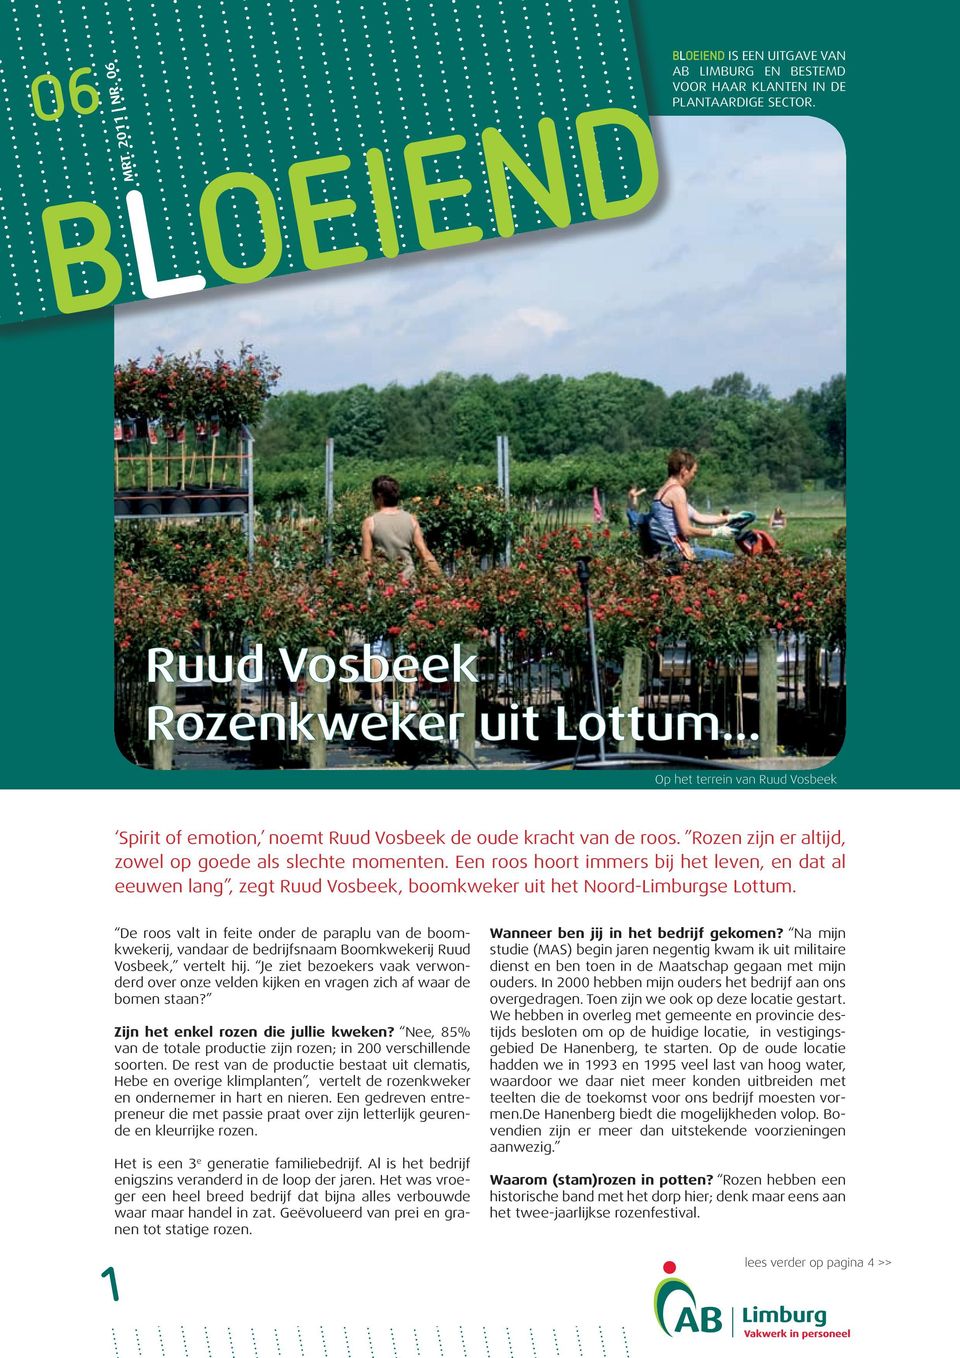 Een roos hoort immers bij het leven, en dat al eeuwen lang, zegt Ruud Vosbeek, boomkweker uit het Noord-Limburgse Lottum.